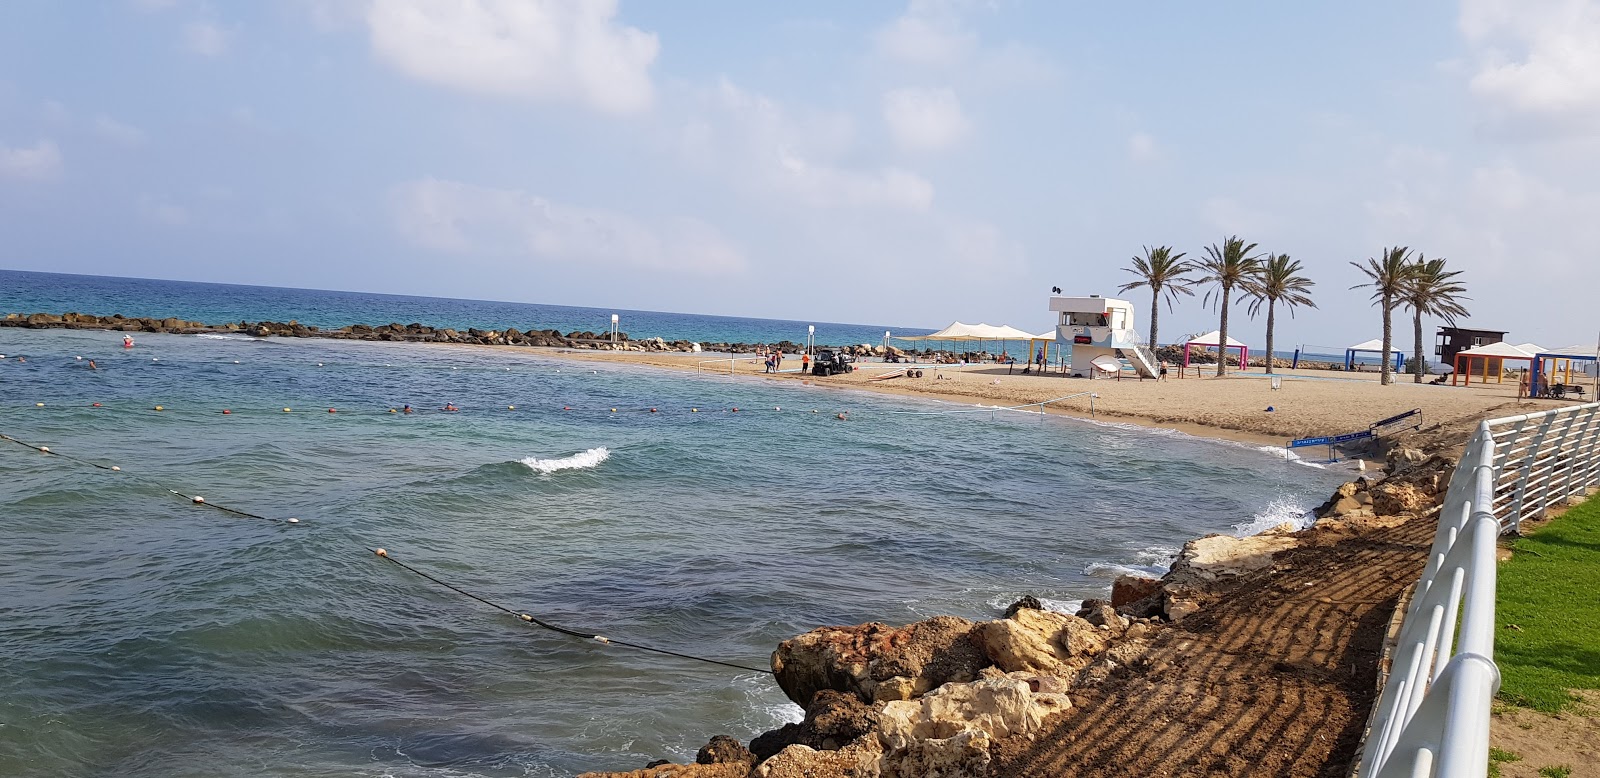 Galei Galil beach'in fotoğrafı küçük koylar ile birlikte